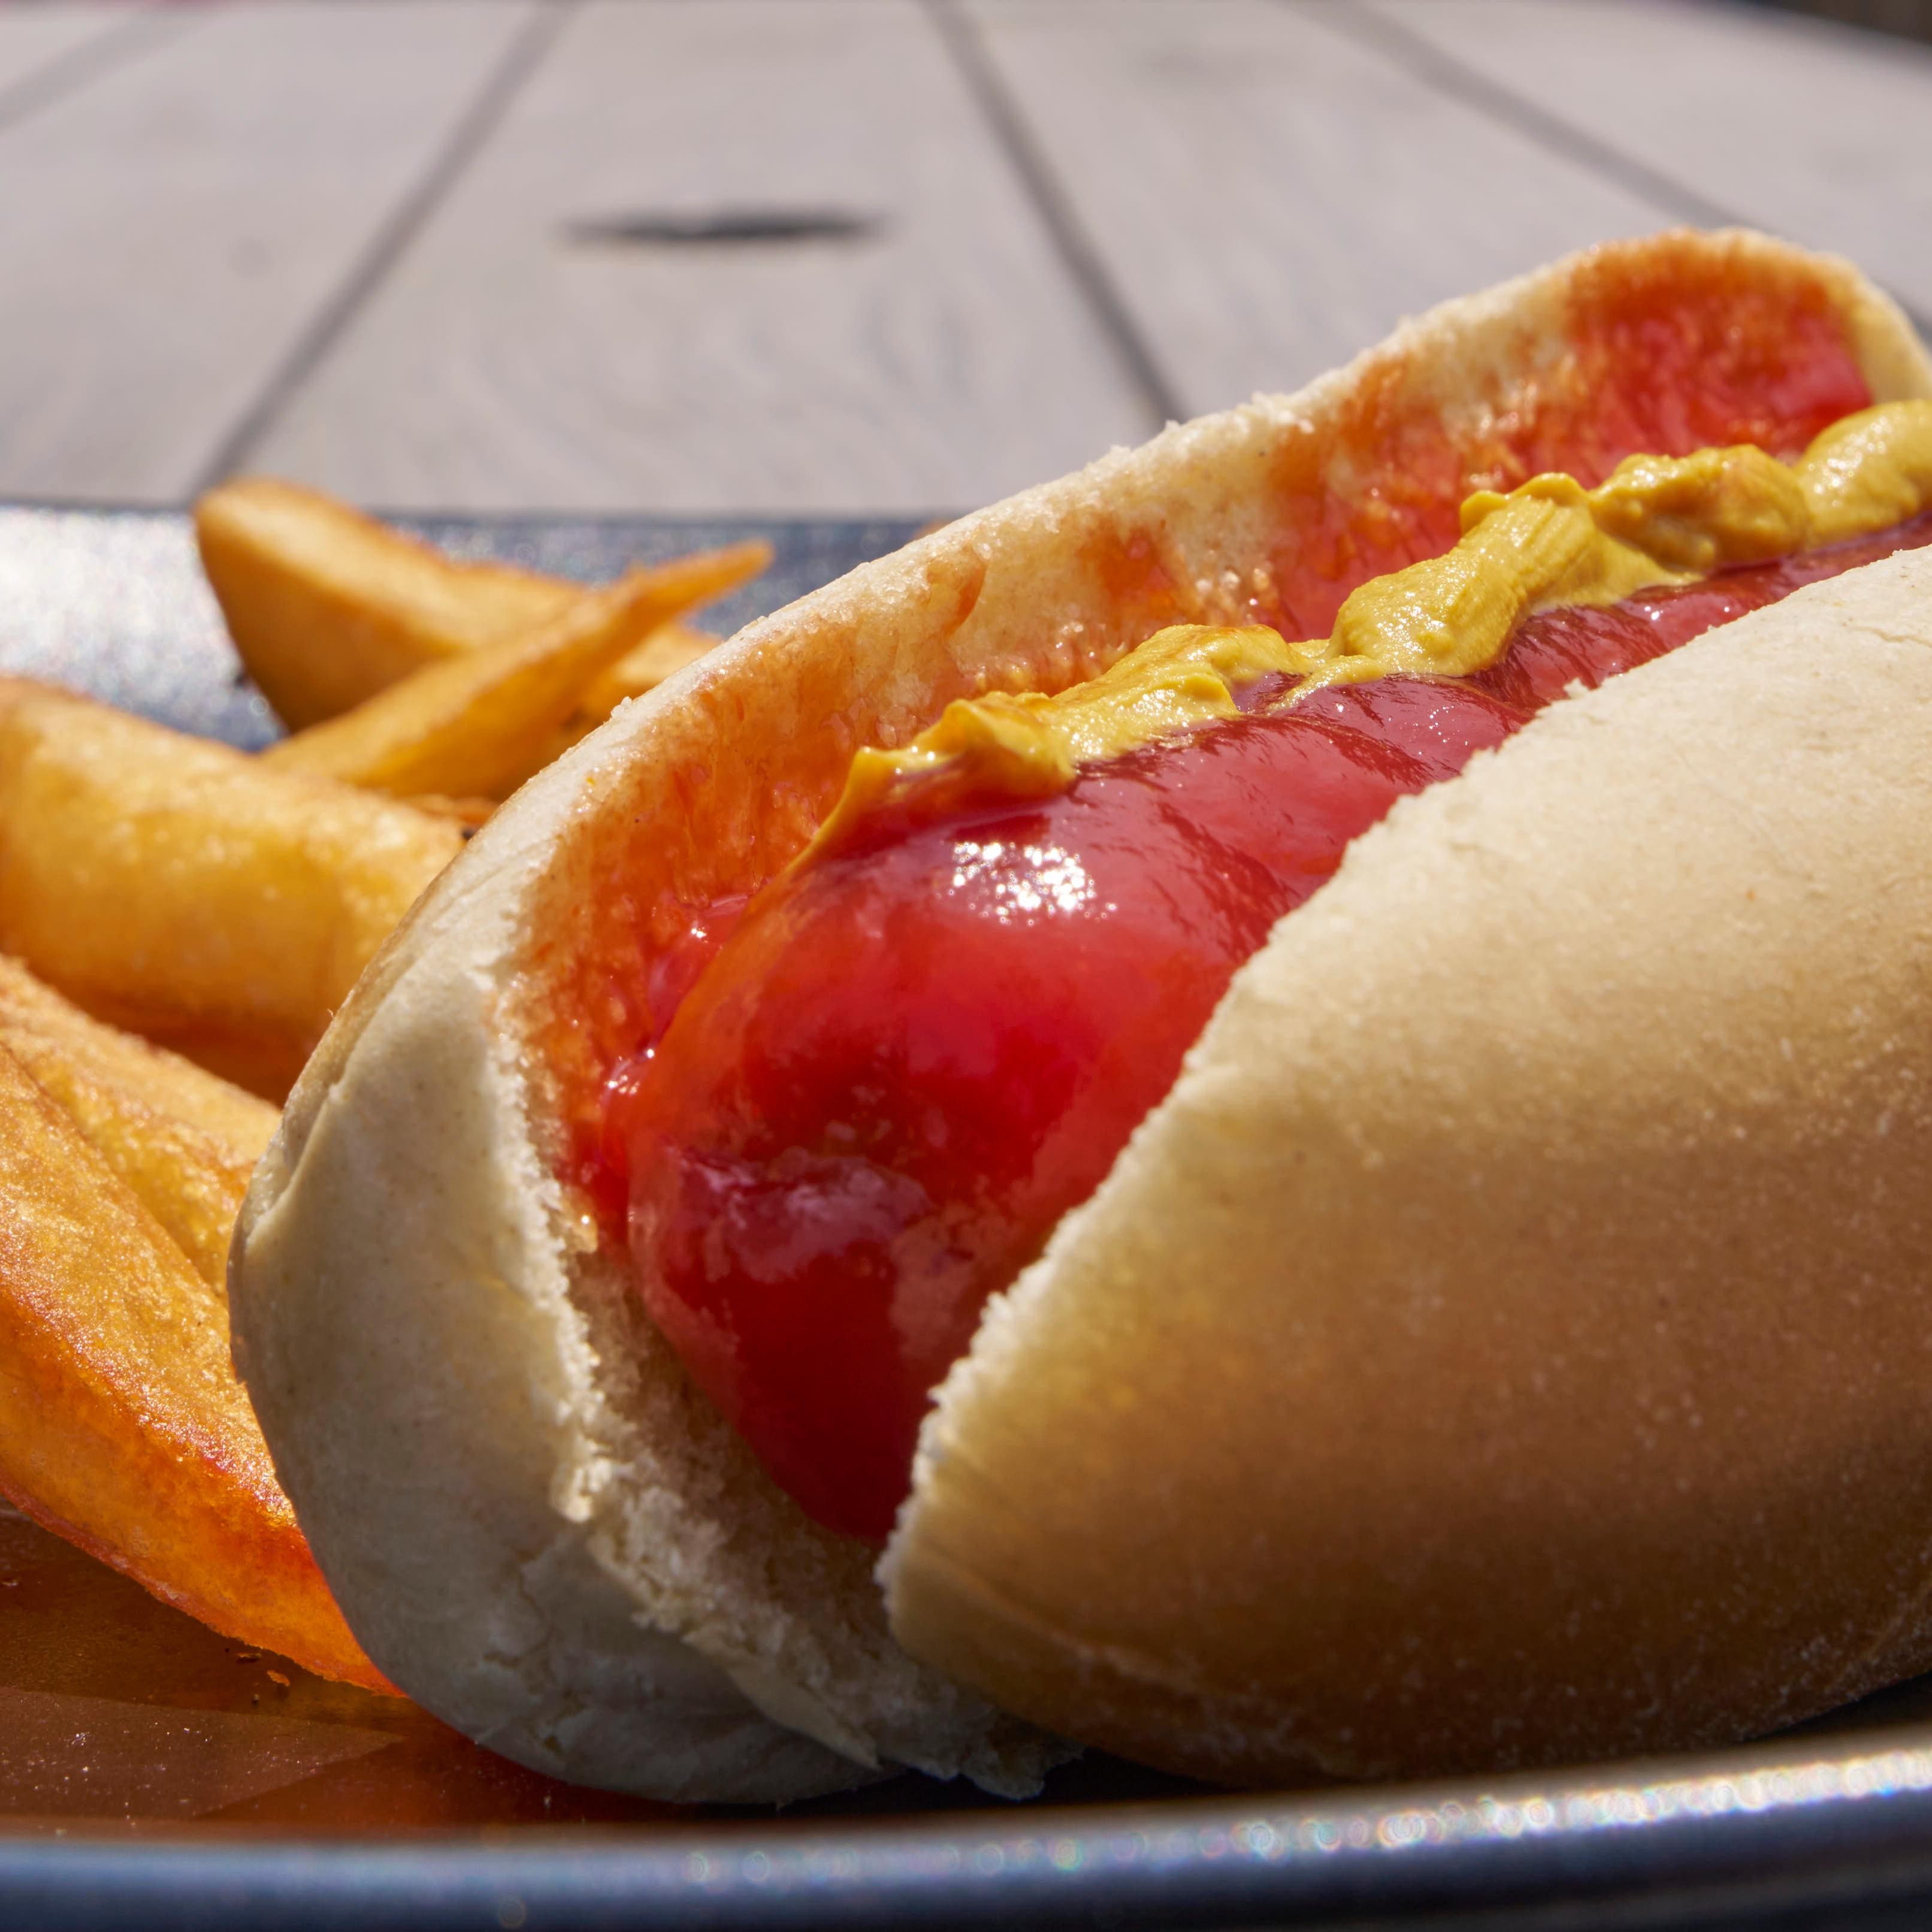 Hot dog w/fries & ketchup